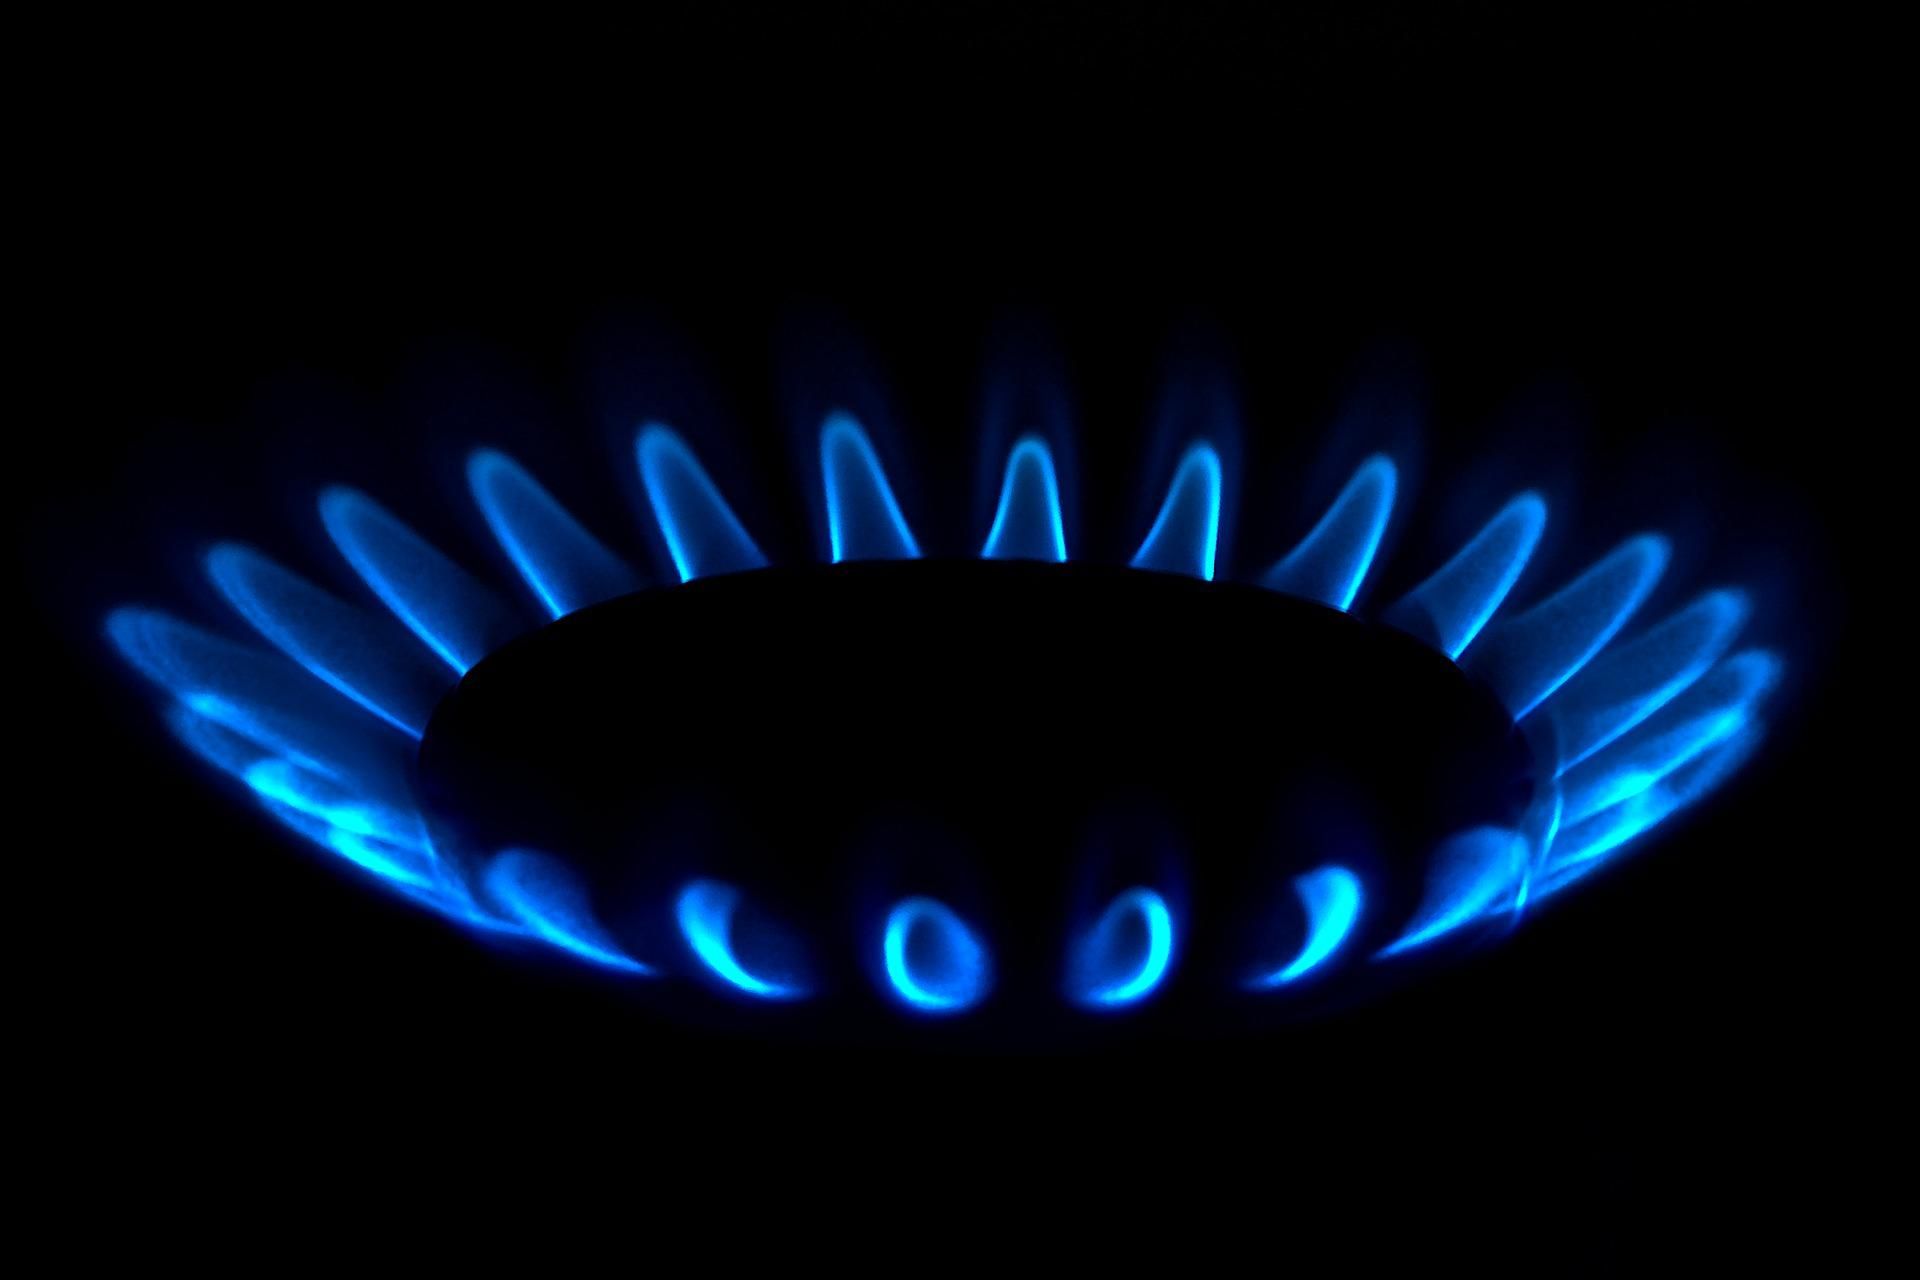 из-за войны существенно упала цена на газ в Украине - Экономика